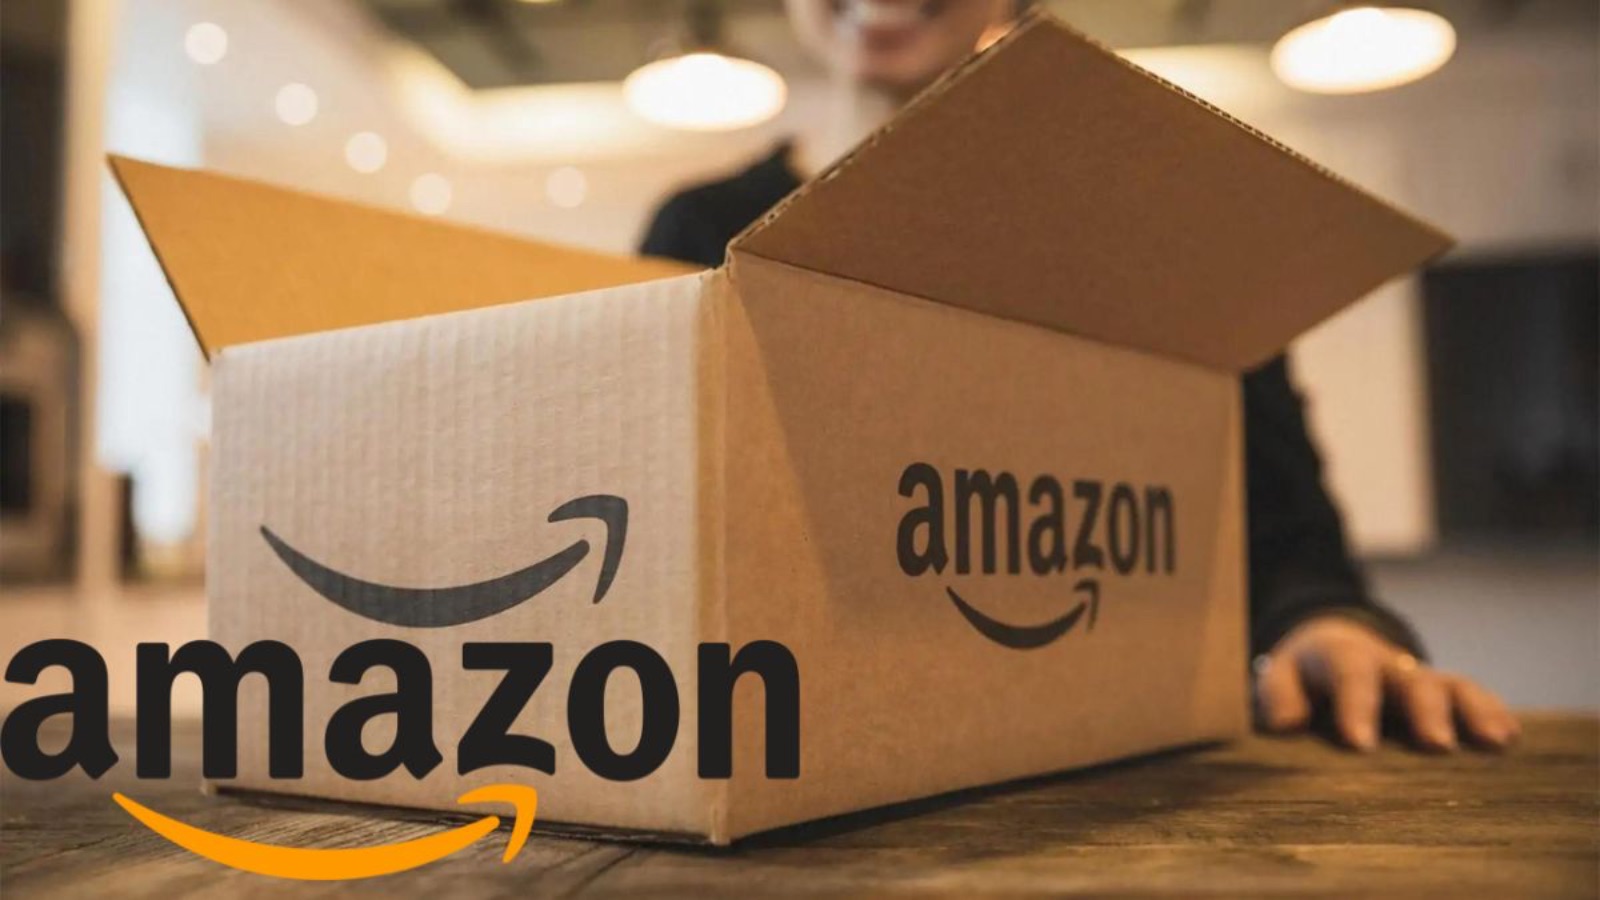 Amazon, grandi offerte al 50% di sconto su iPhone, Samsung e Pixel 